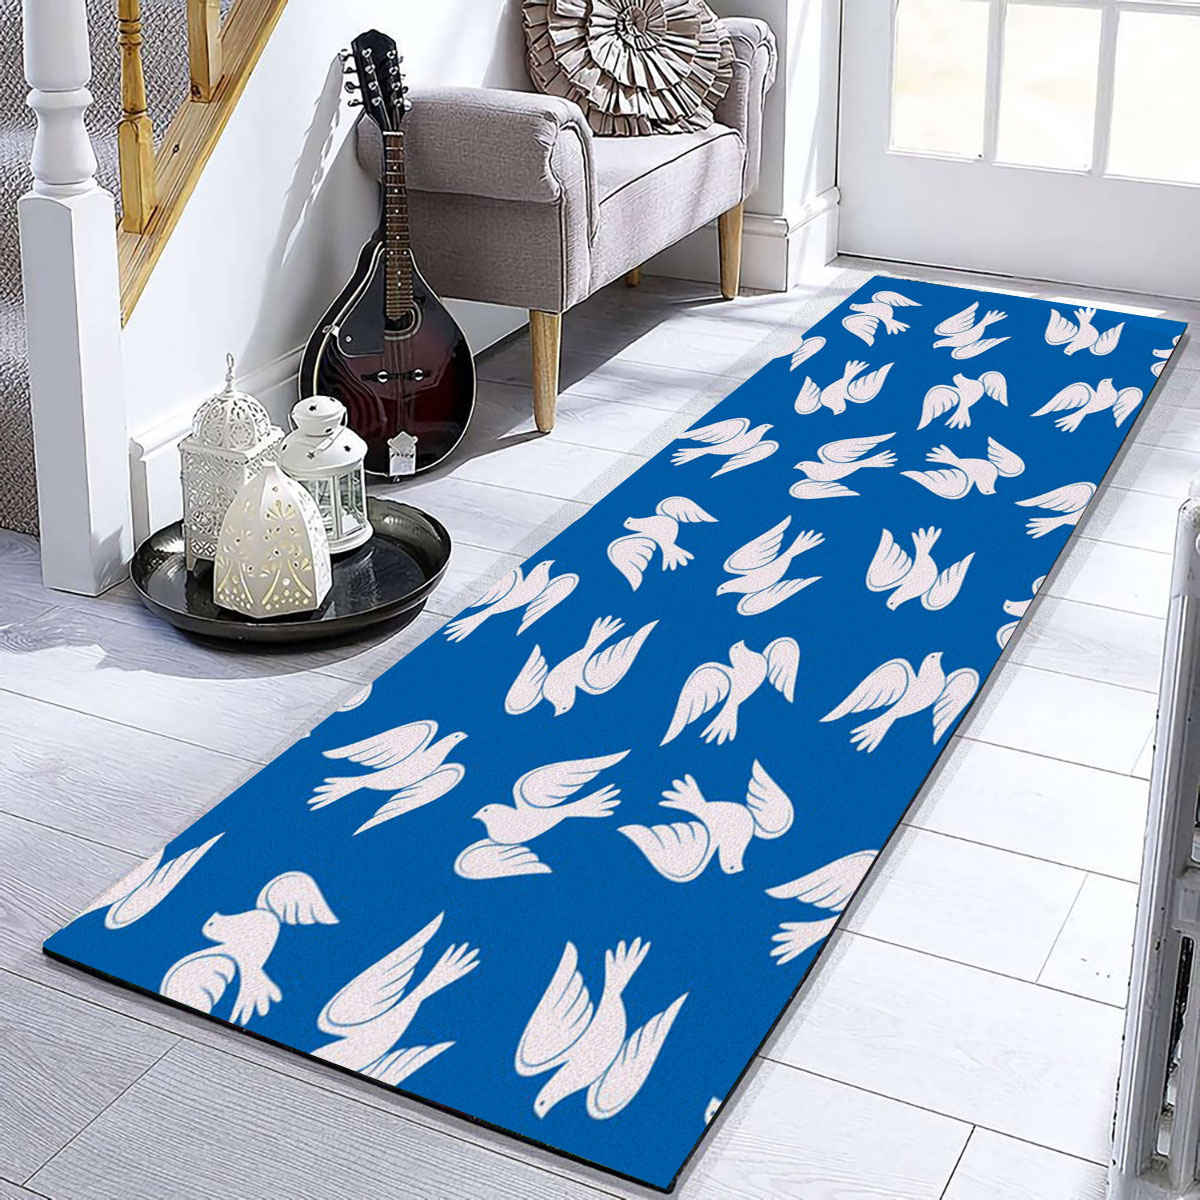 White Dove On Blue Monogram Runner Carpet 6